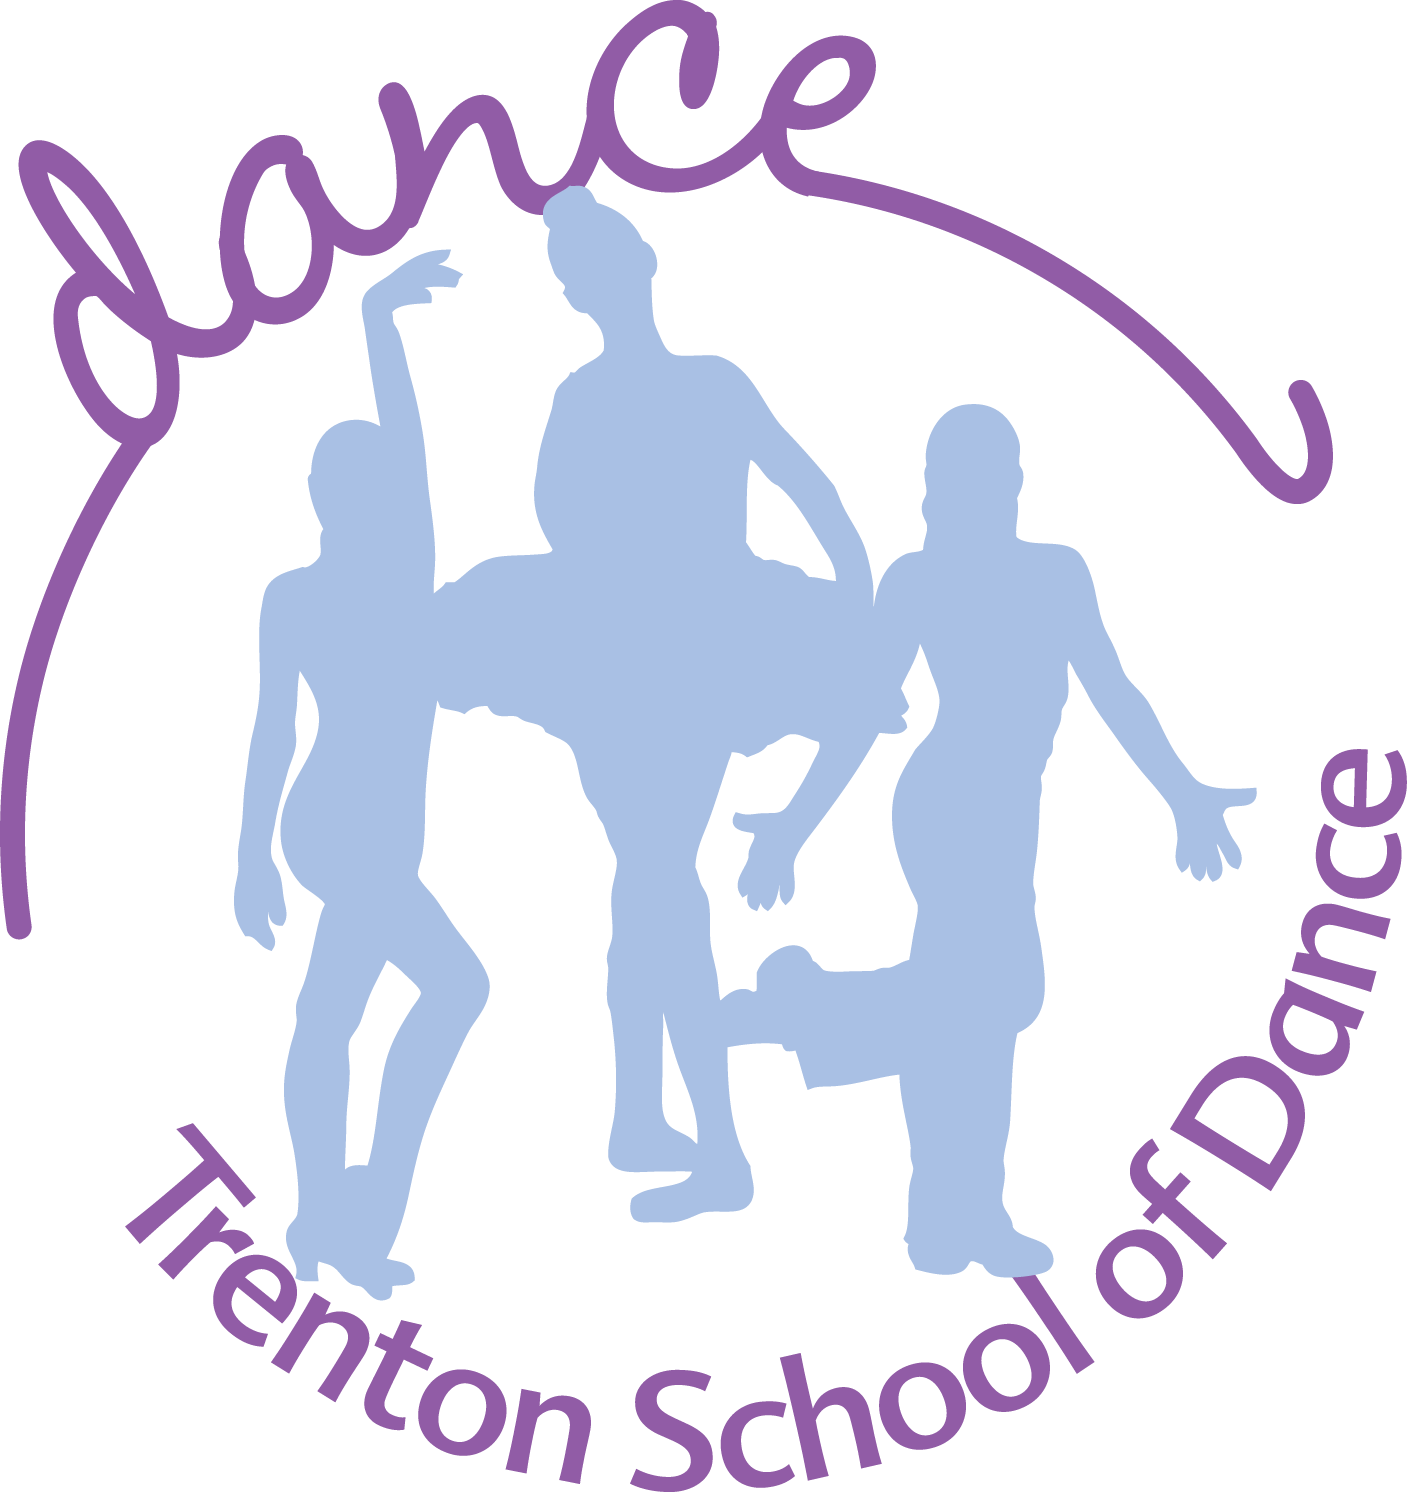 Trenton School of Dance | Premier Downriver Dance Studio